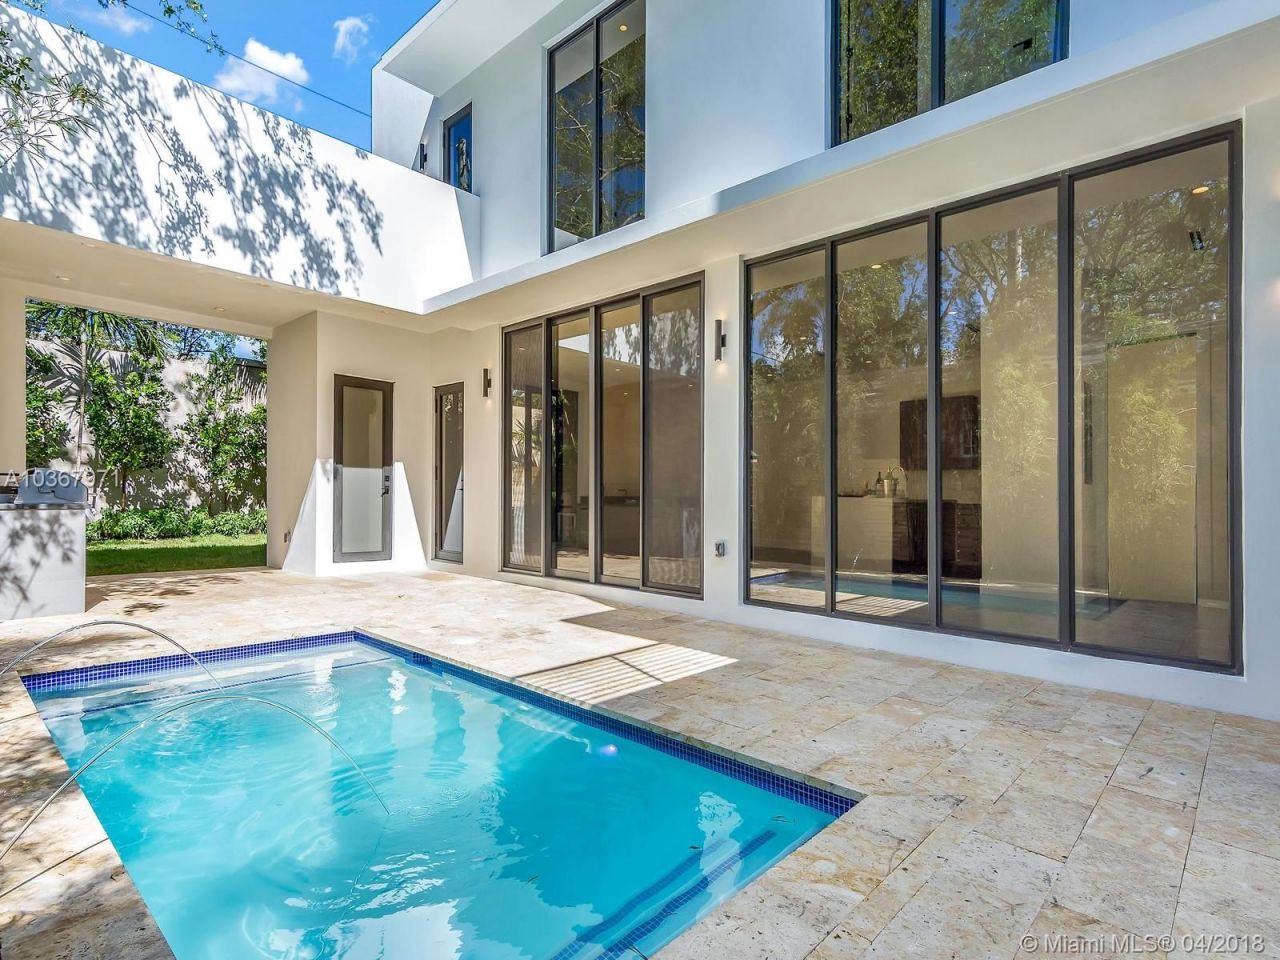 Villa in Miami, USA, 285 sq.m - picture 1